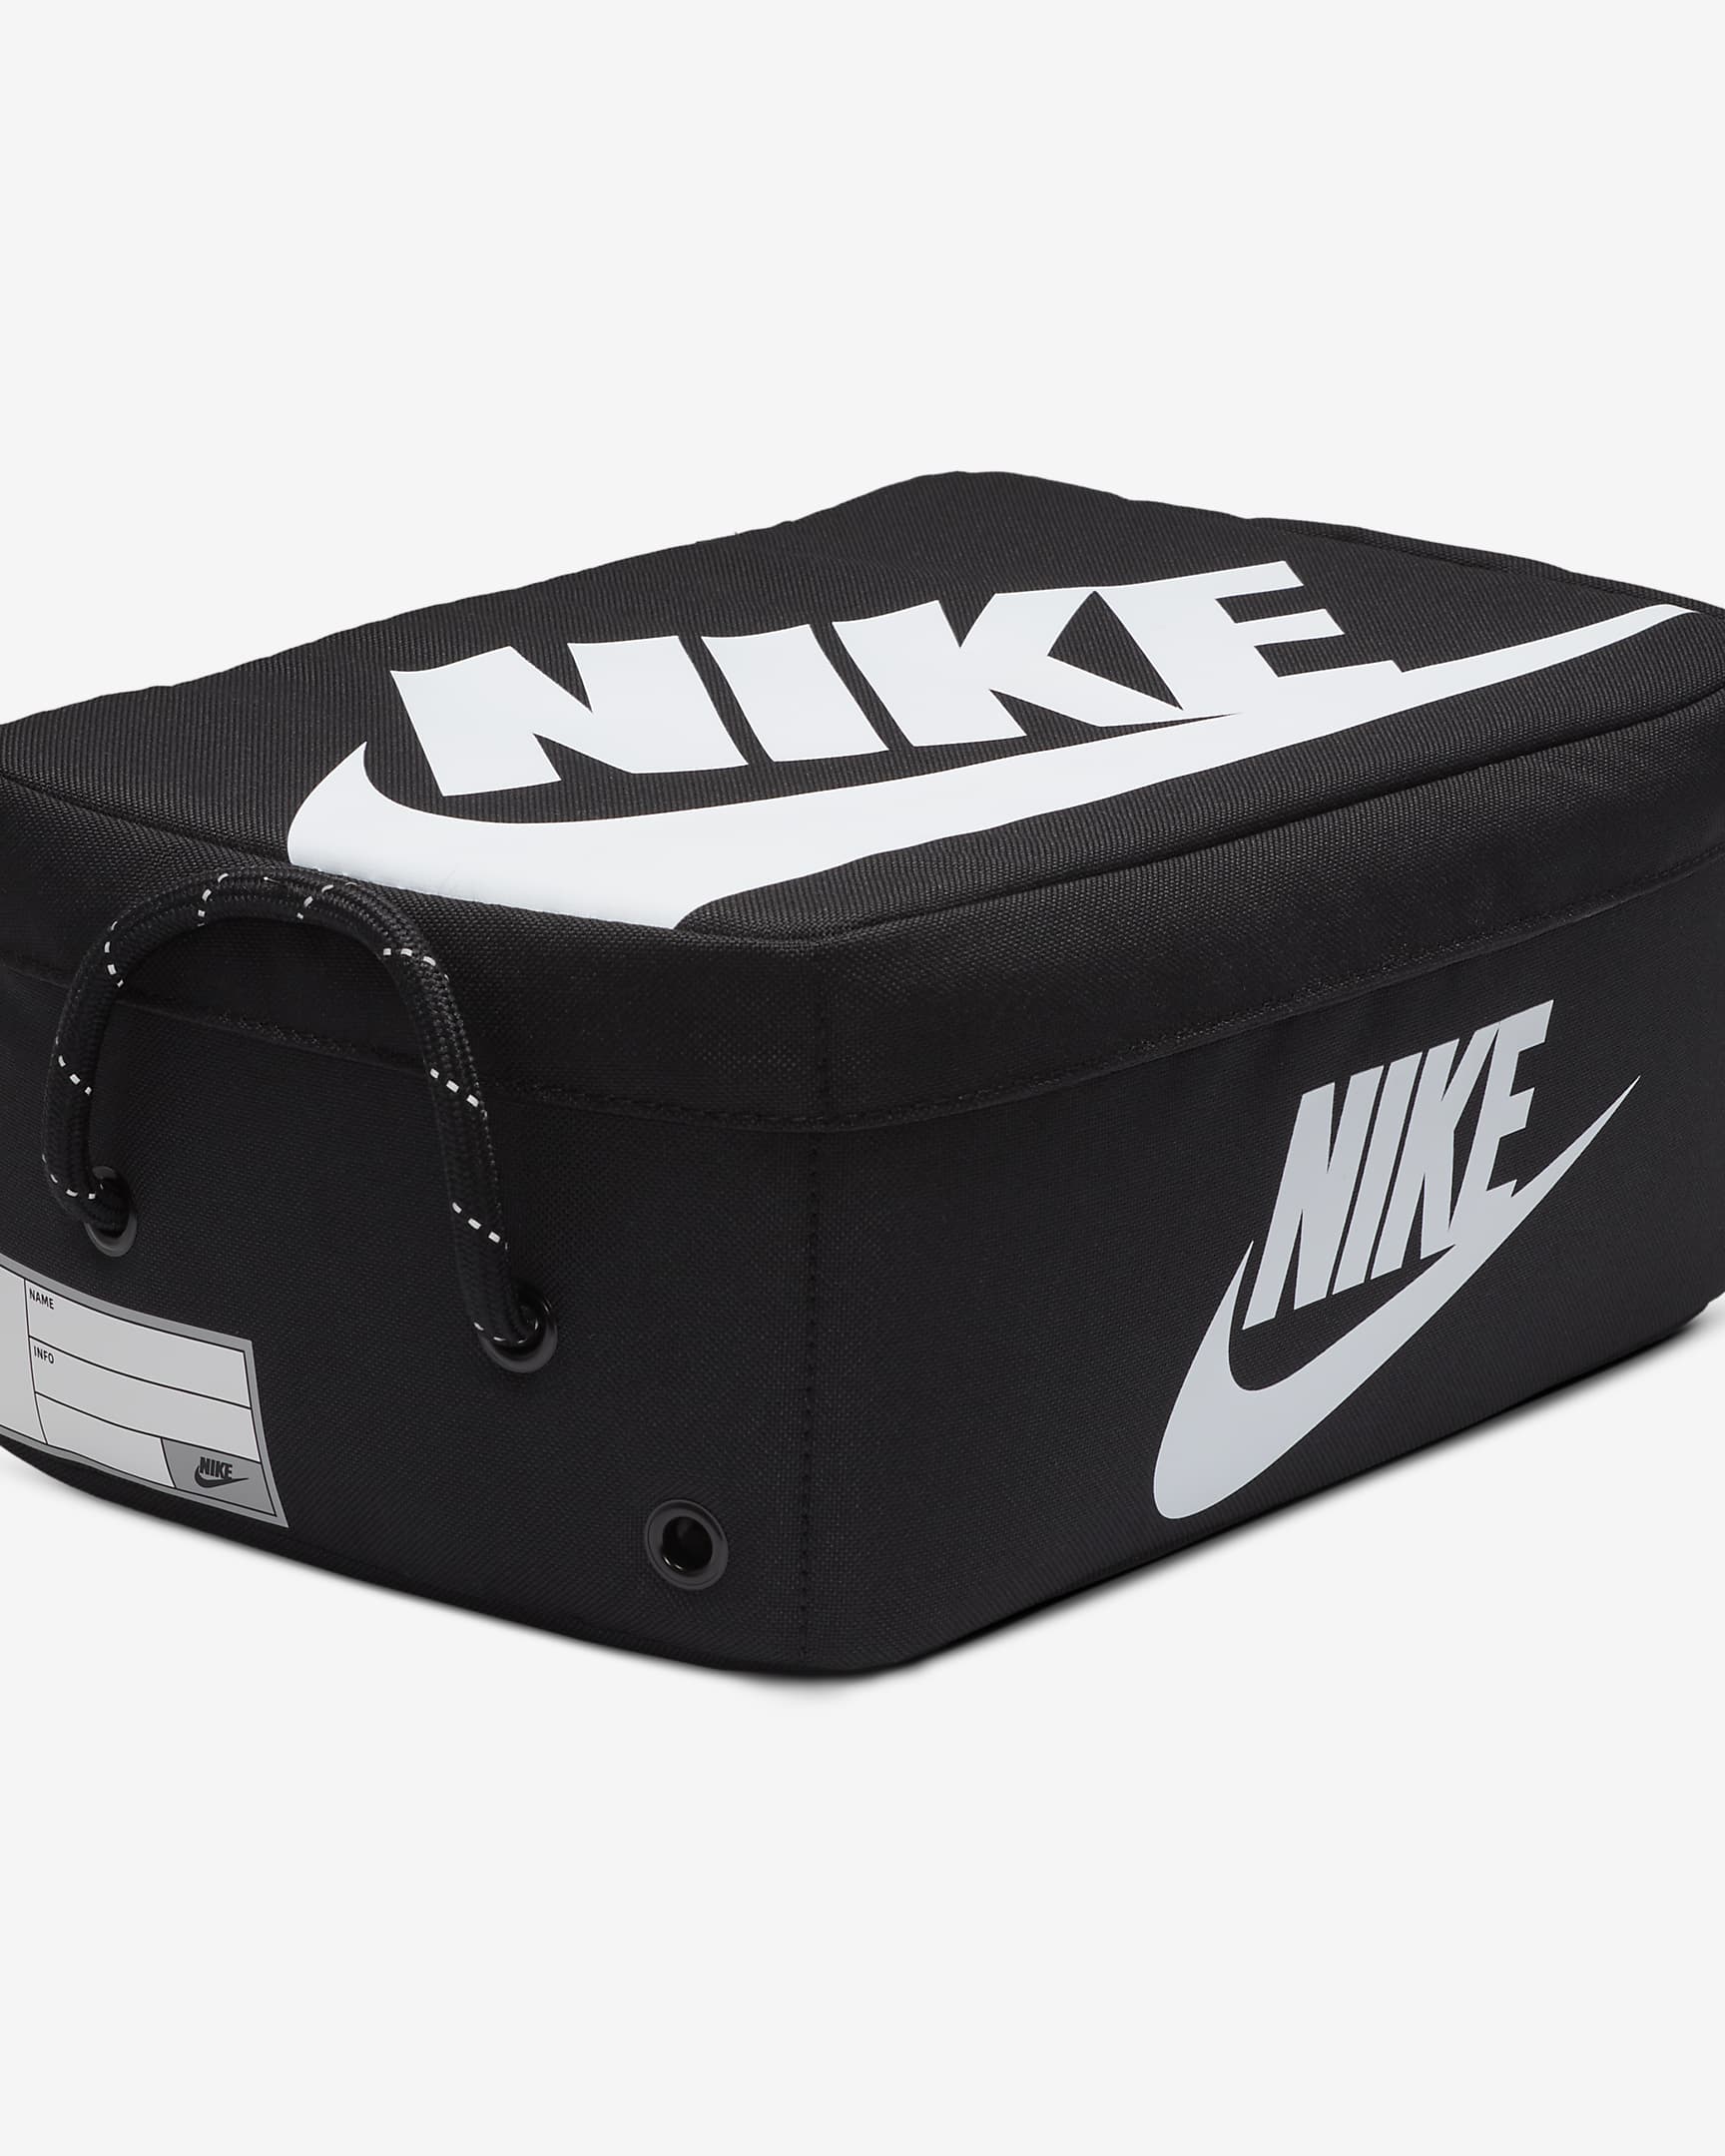 Nike skobag (liten, 8 L) - Svart/Svart/Hvit